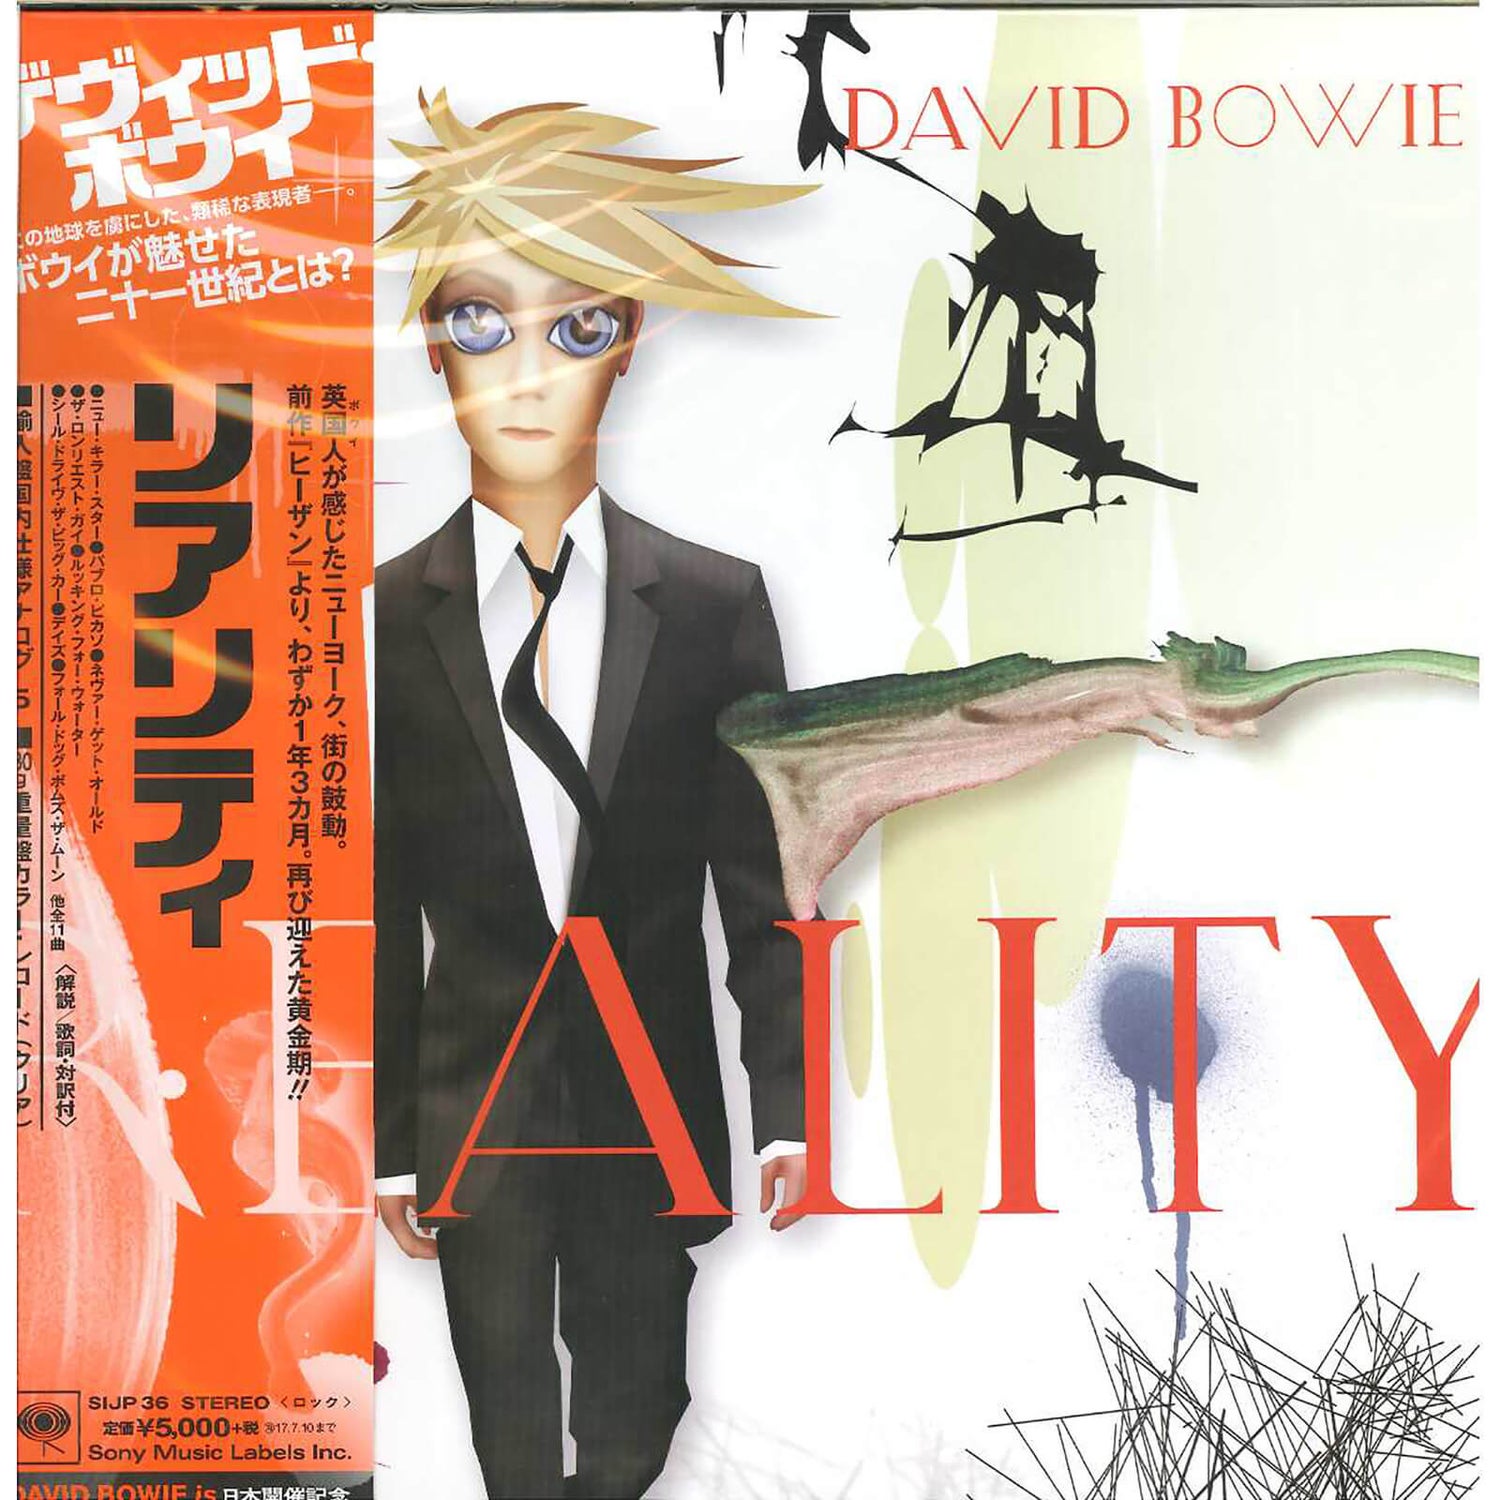 David Bowie - Reality LP Édition japonaise